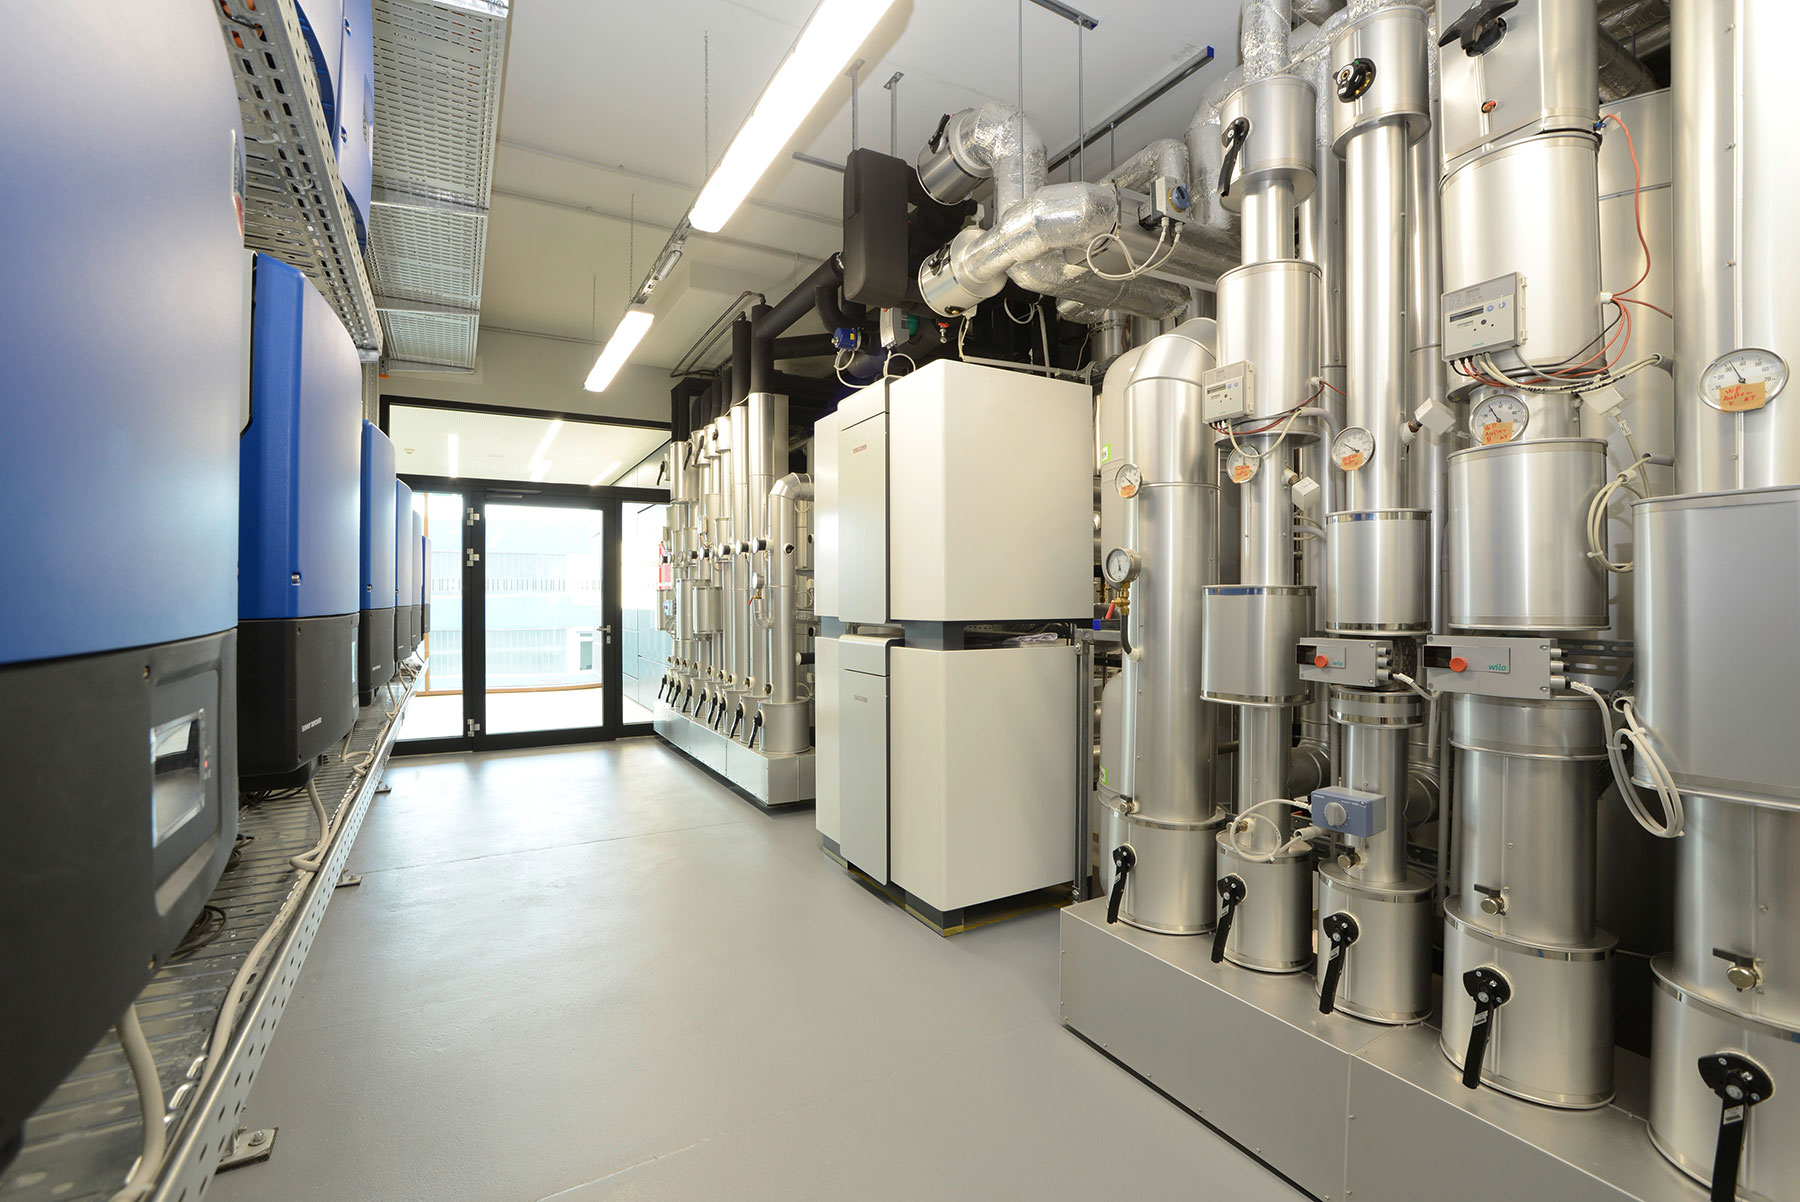 Pohľad do technickej miestnosti s dvomi vysokovýkonnými tepelnými čerpadlami pre  vykurovanie a chladenie centra.